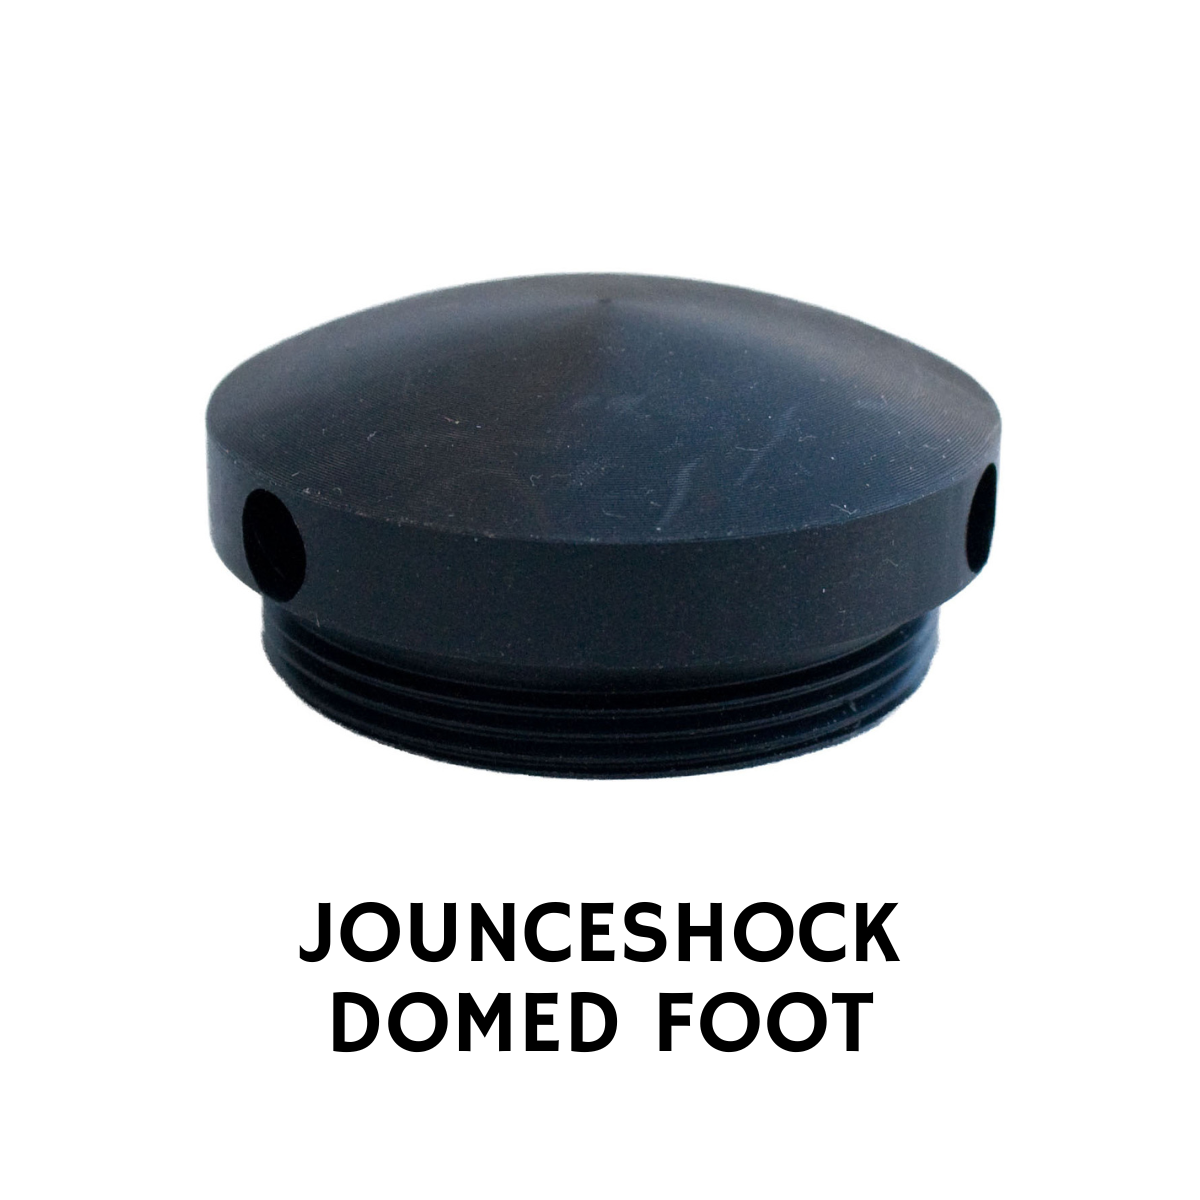 JOUNCESHOCK DOMED FOOT